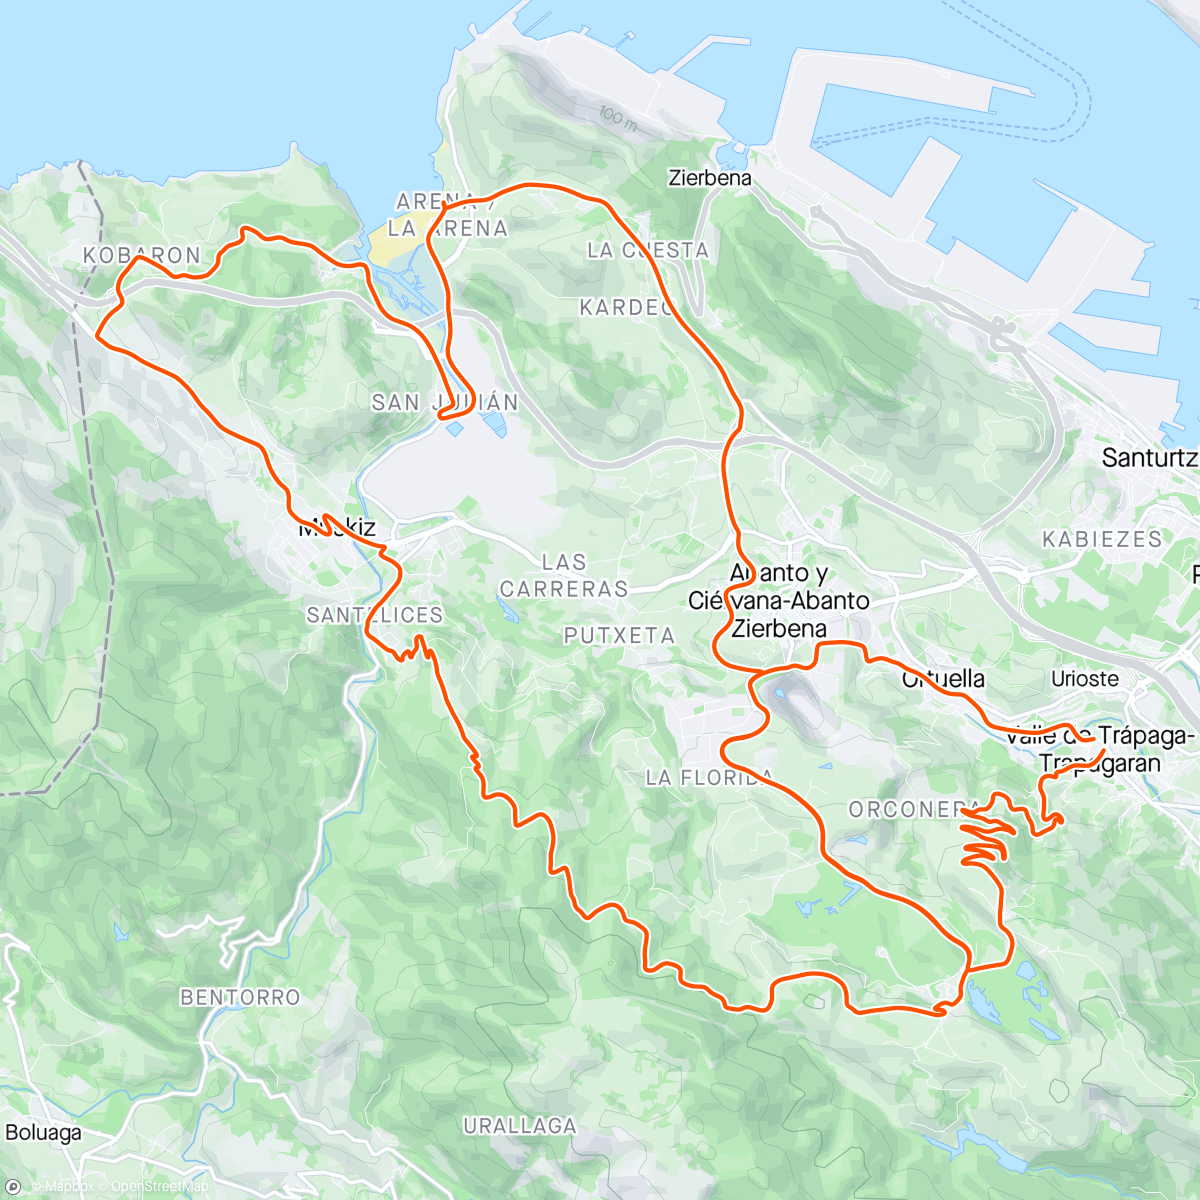 「Vuelta a Pobeña」活動的地圖